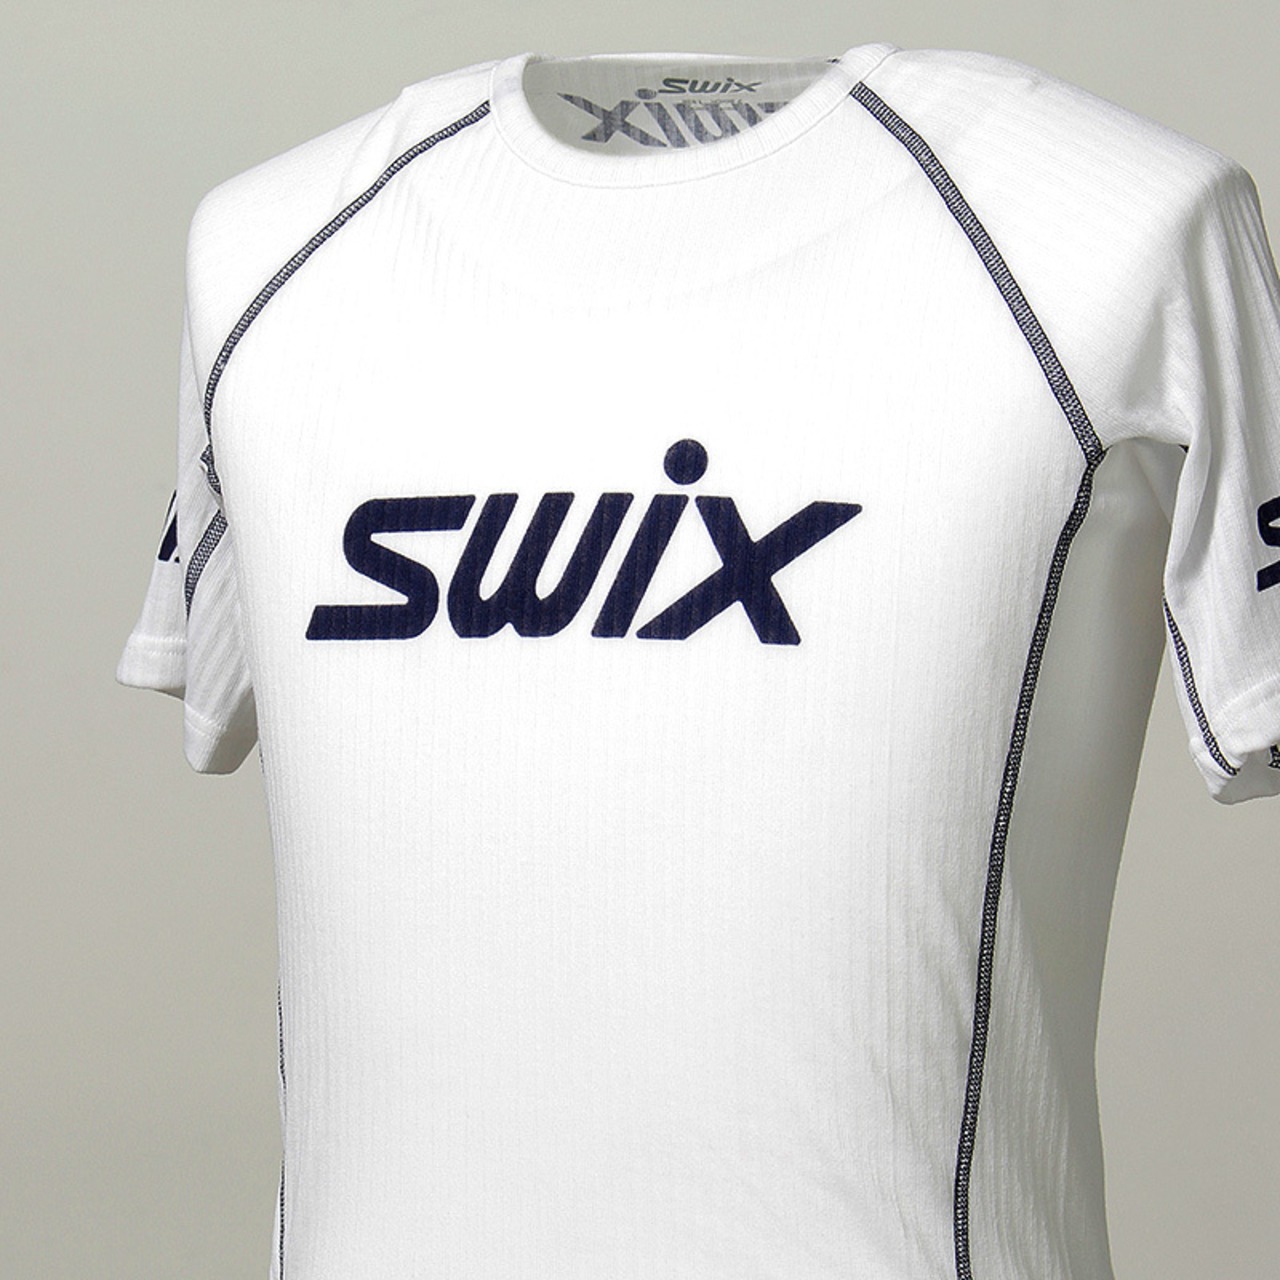 SWIX(スウィックス) レースボディー SS 半袖 メンズ 40451-00000 ベースレイヤー ボディ フィットネス ランニング ウェア メンズ インナー アウトドア スポーツ